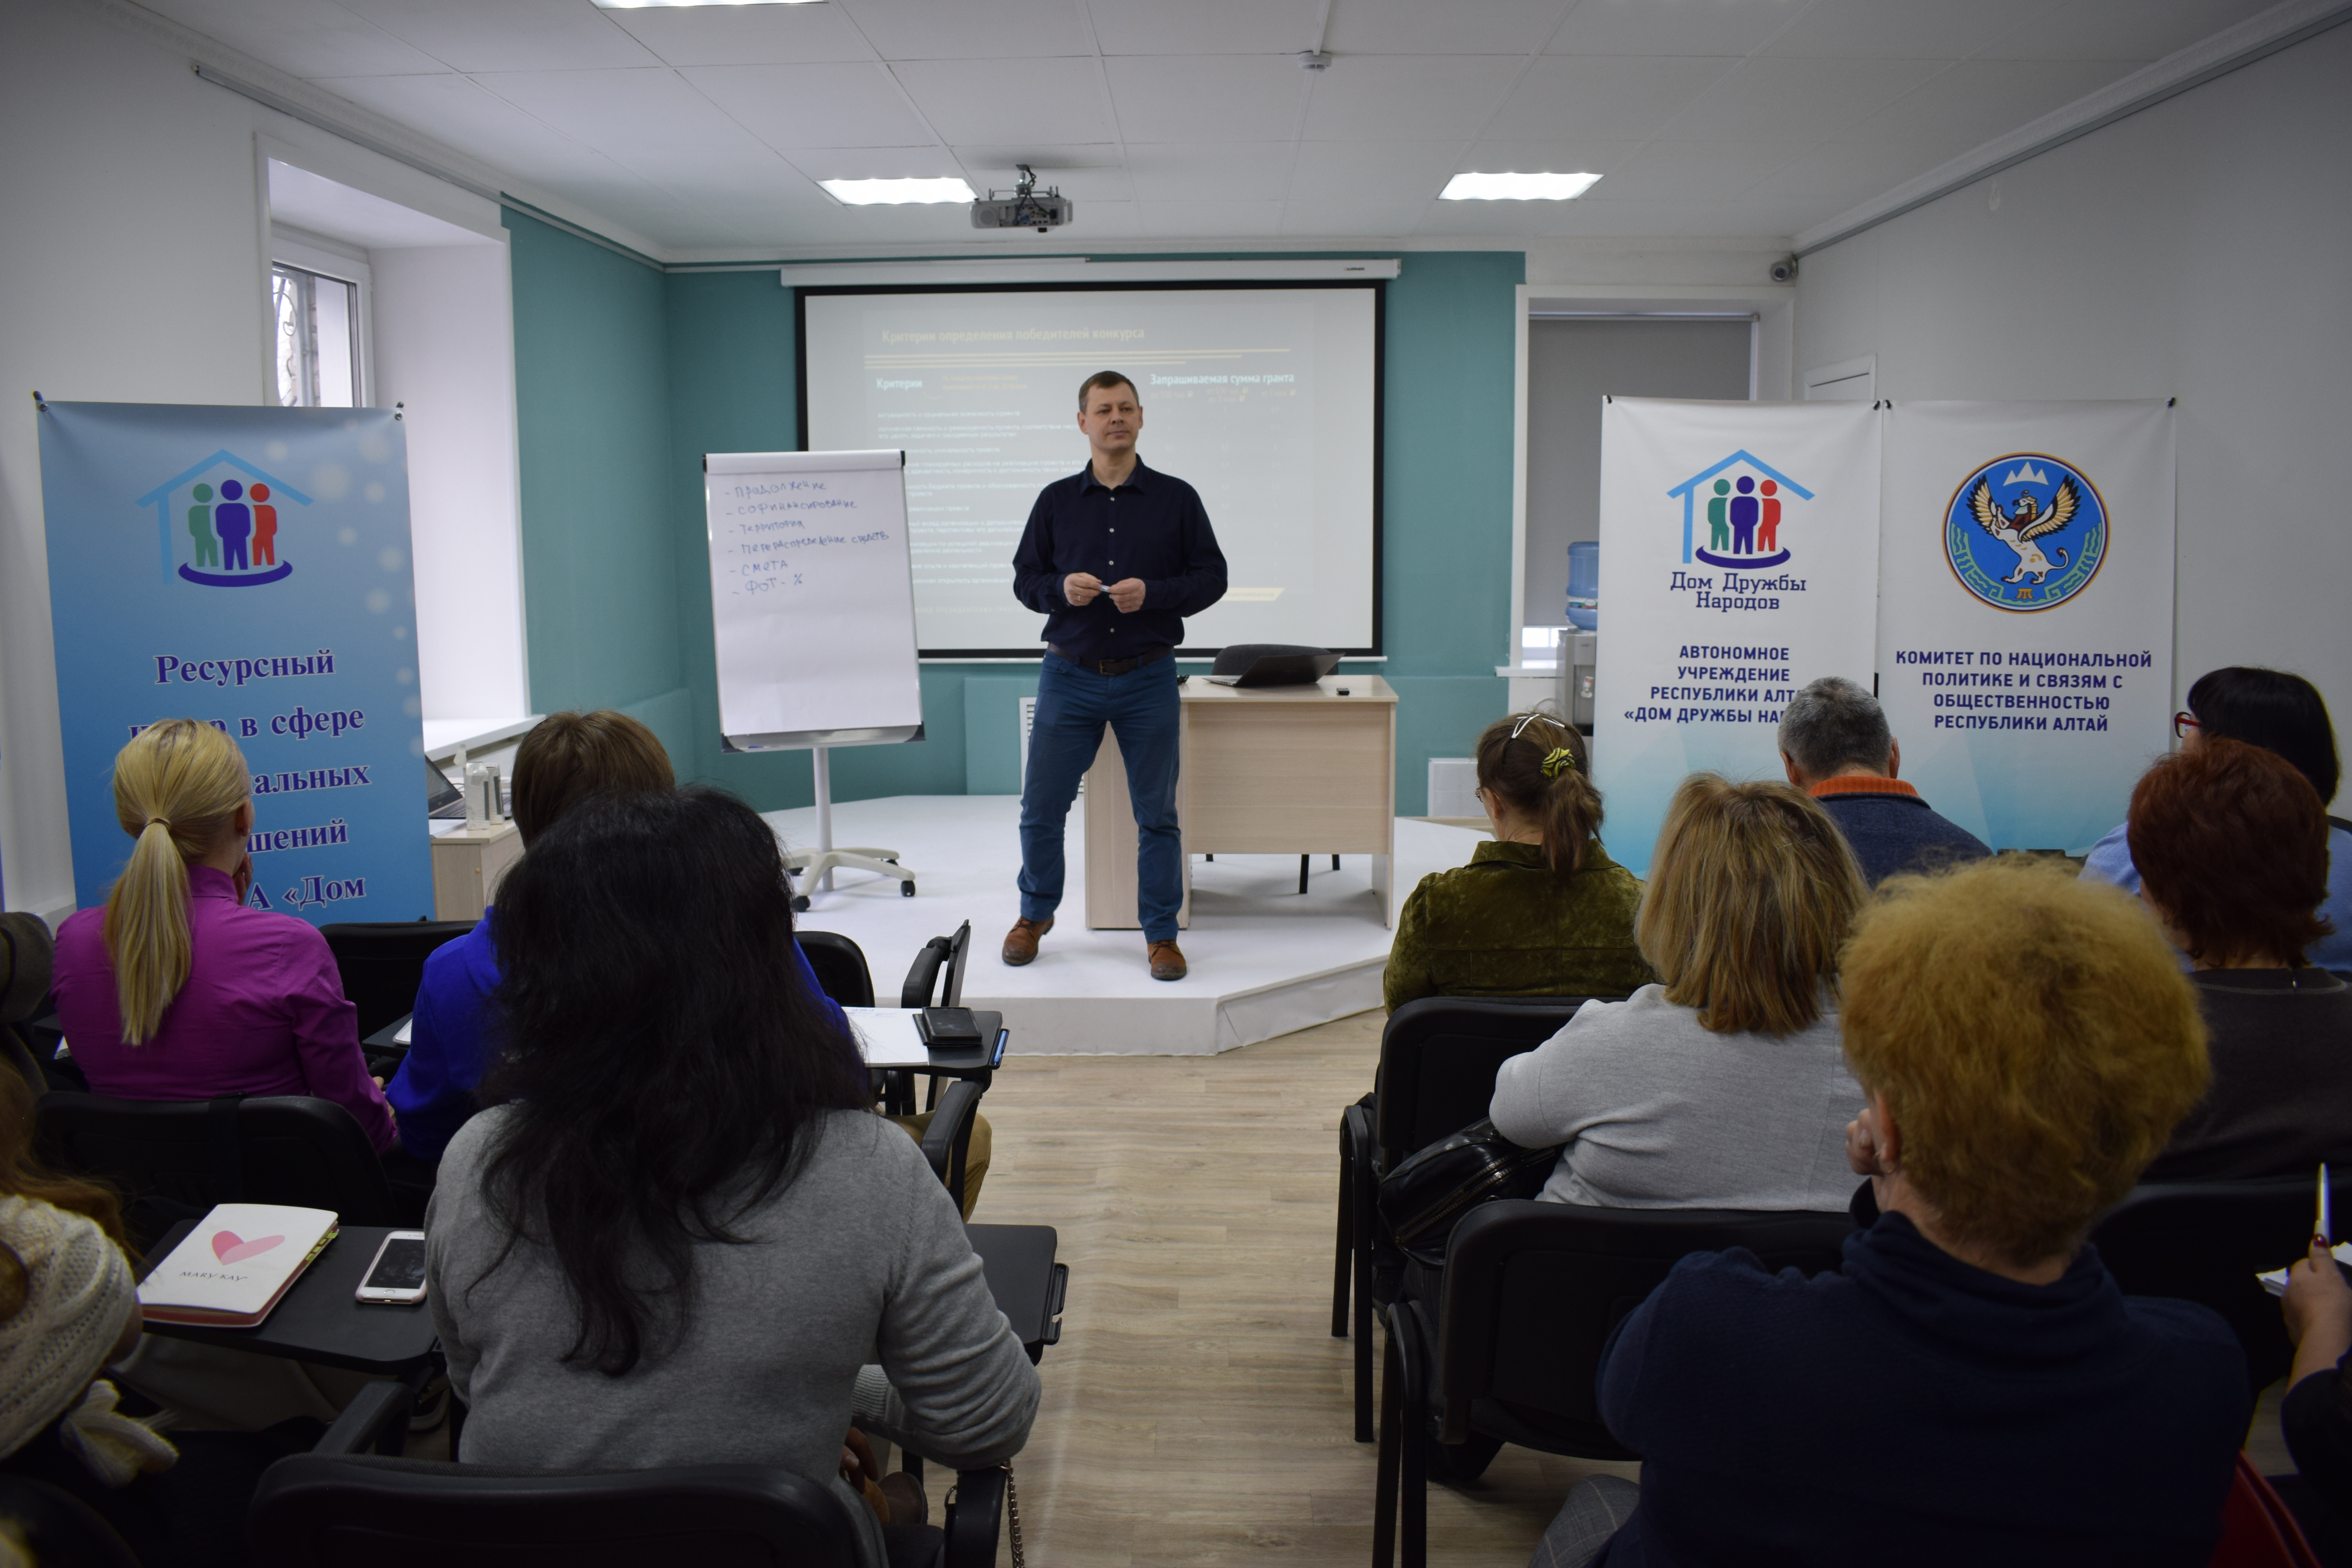 Практический семинар по проектной деятельности для НКО состоялся в Горно-Алтайске